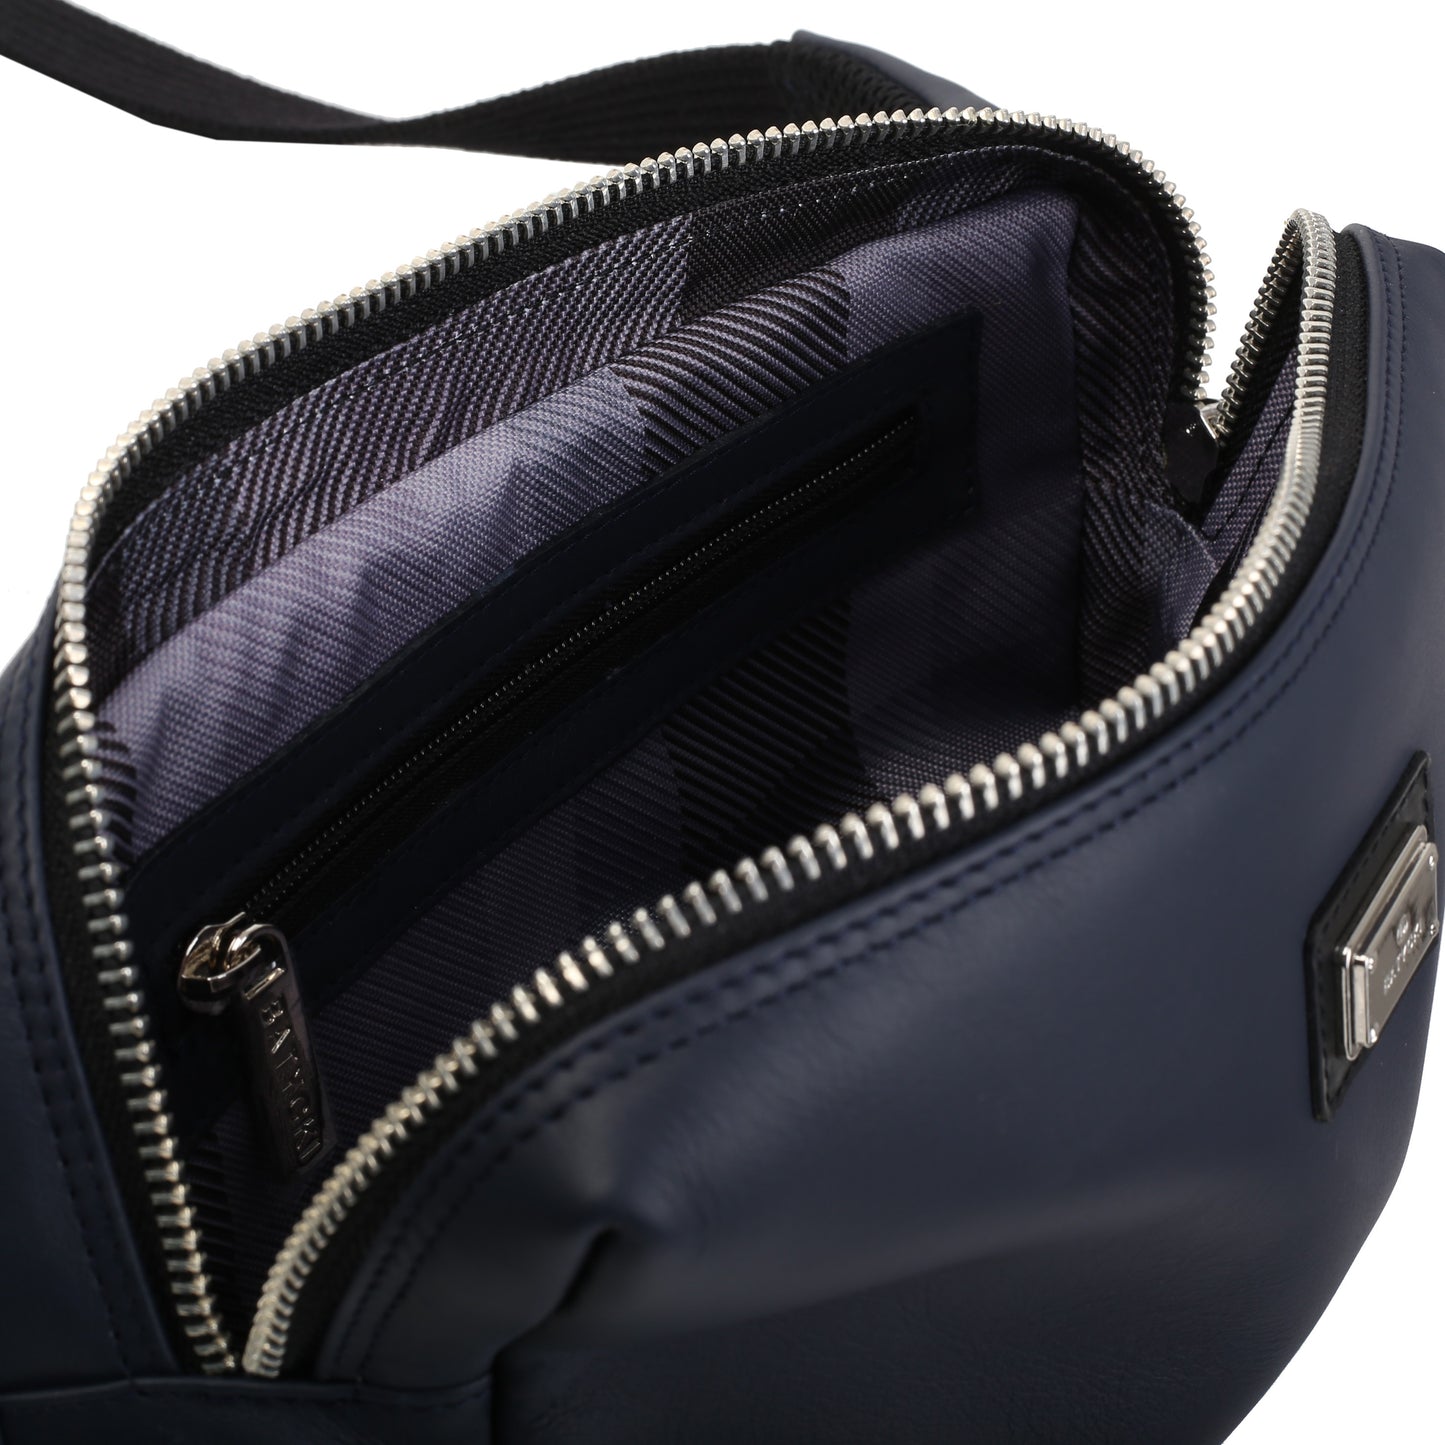 NAVY leather men's satchel